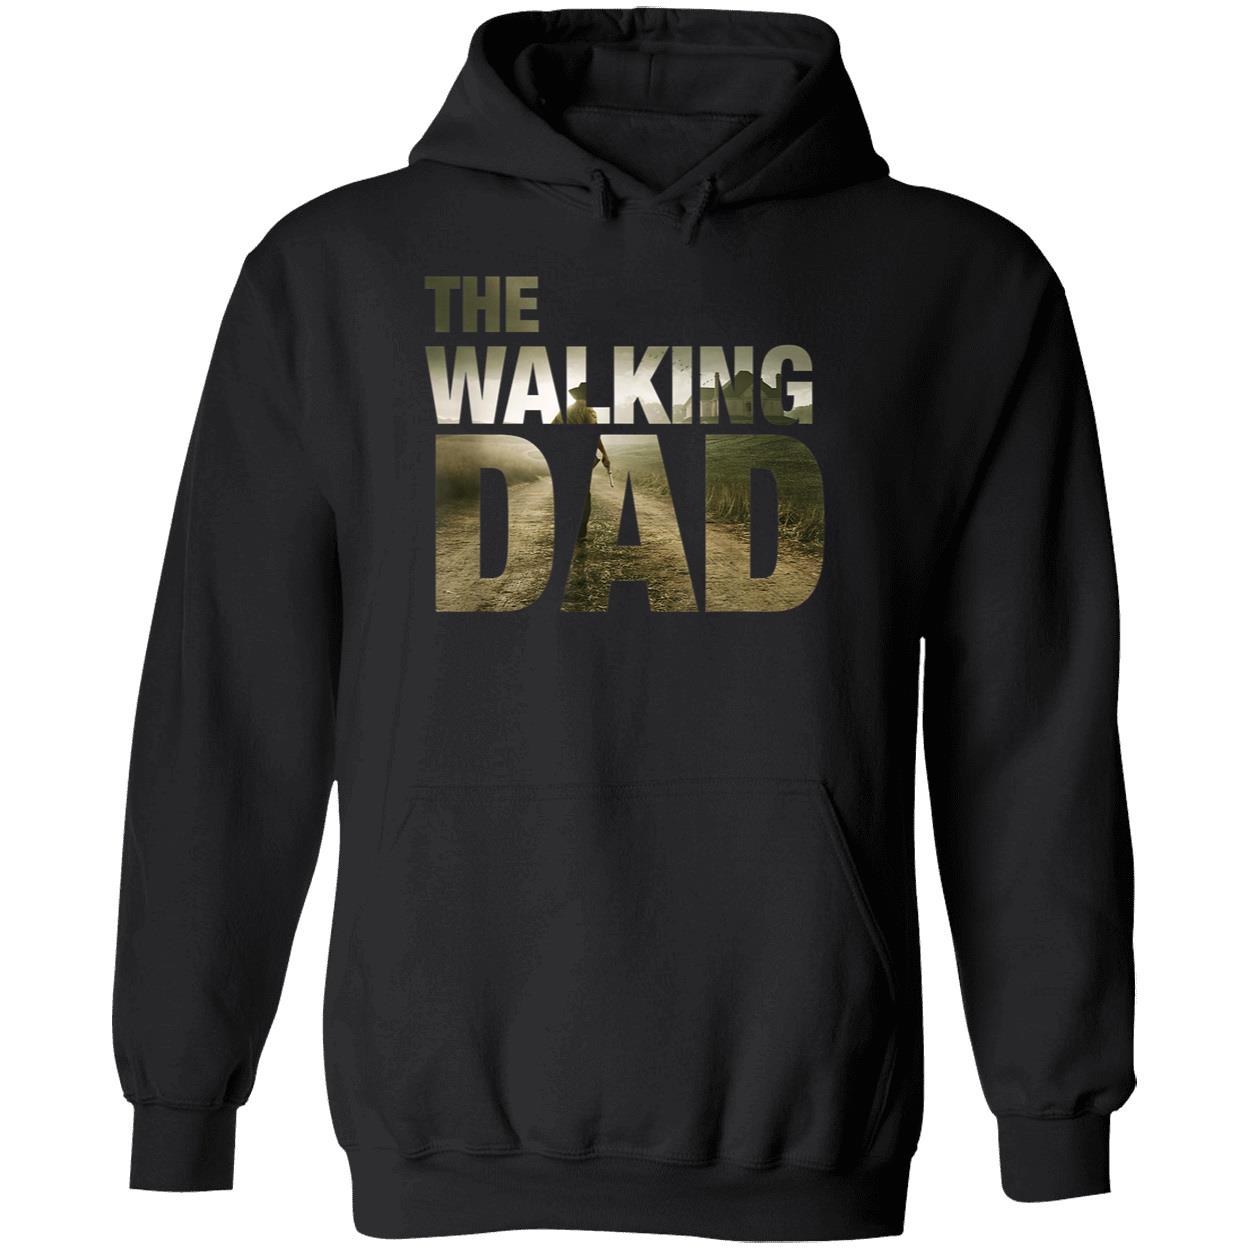 The Walking Dad Shirt